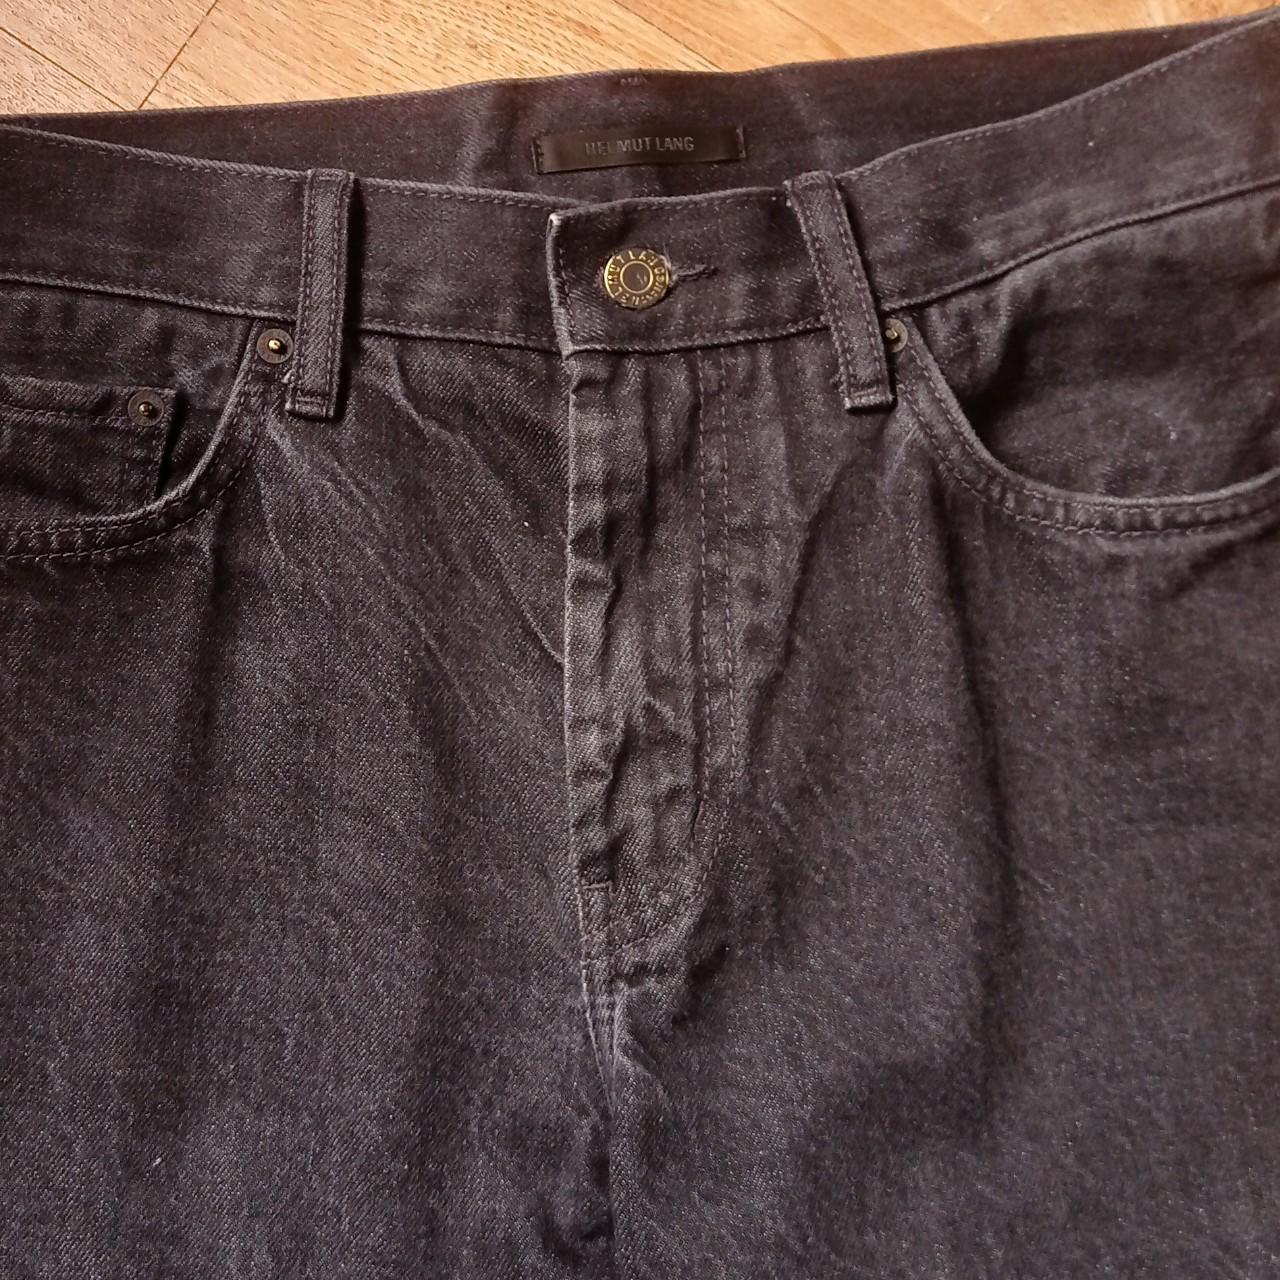 Helmut Lang Dark Wash Classic fit jeans Helmut... - Depop